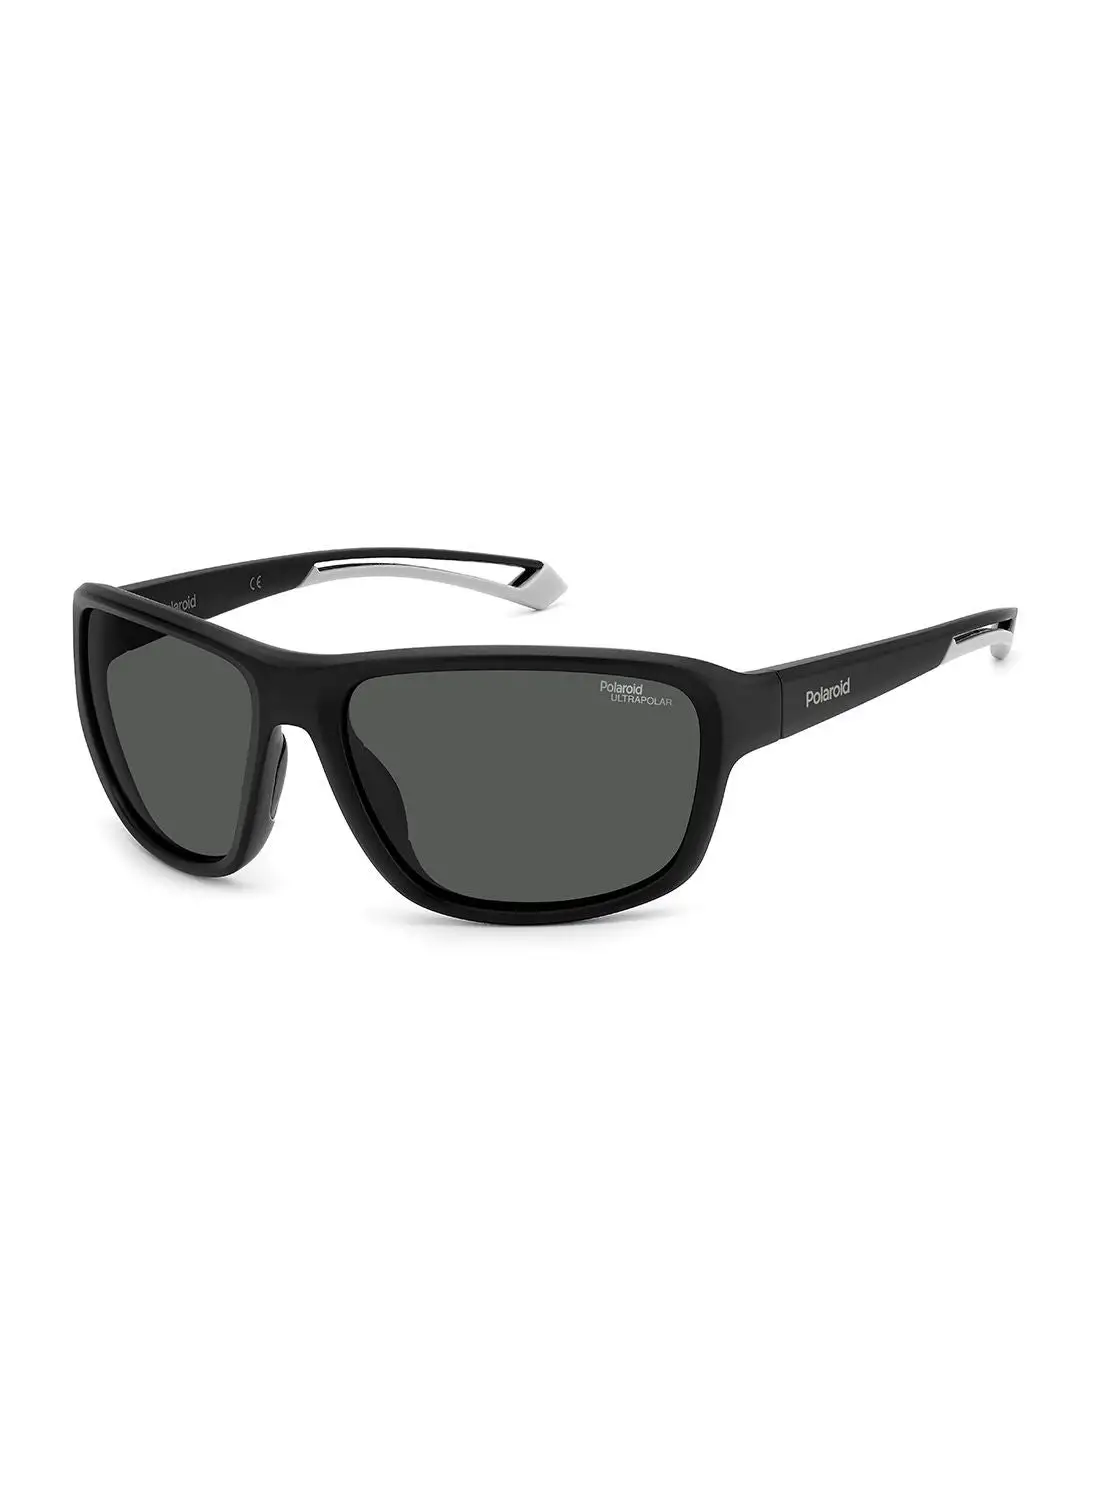 بولارويد نظارة شمسية مستطيلة للحماية من الأشعة فوق البنفسجية للجنسين - Pld 7049/S Mtt Black 62 - مقاس العدسة: 62 ملم